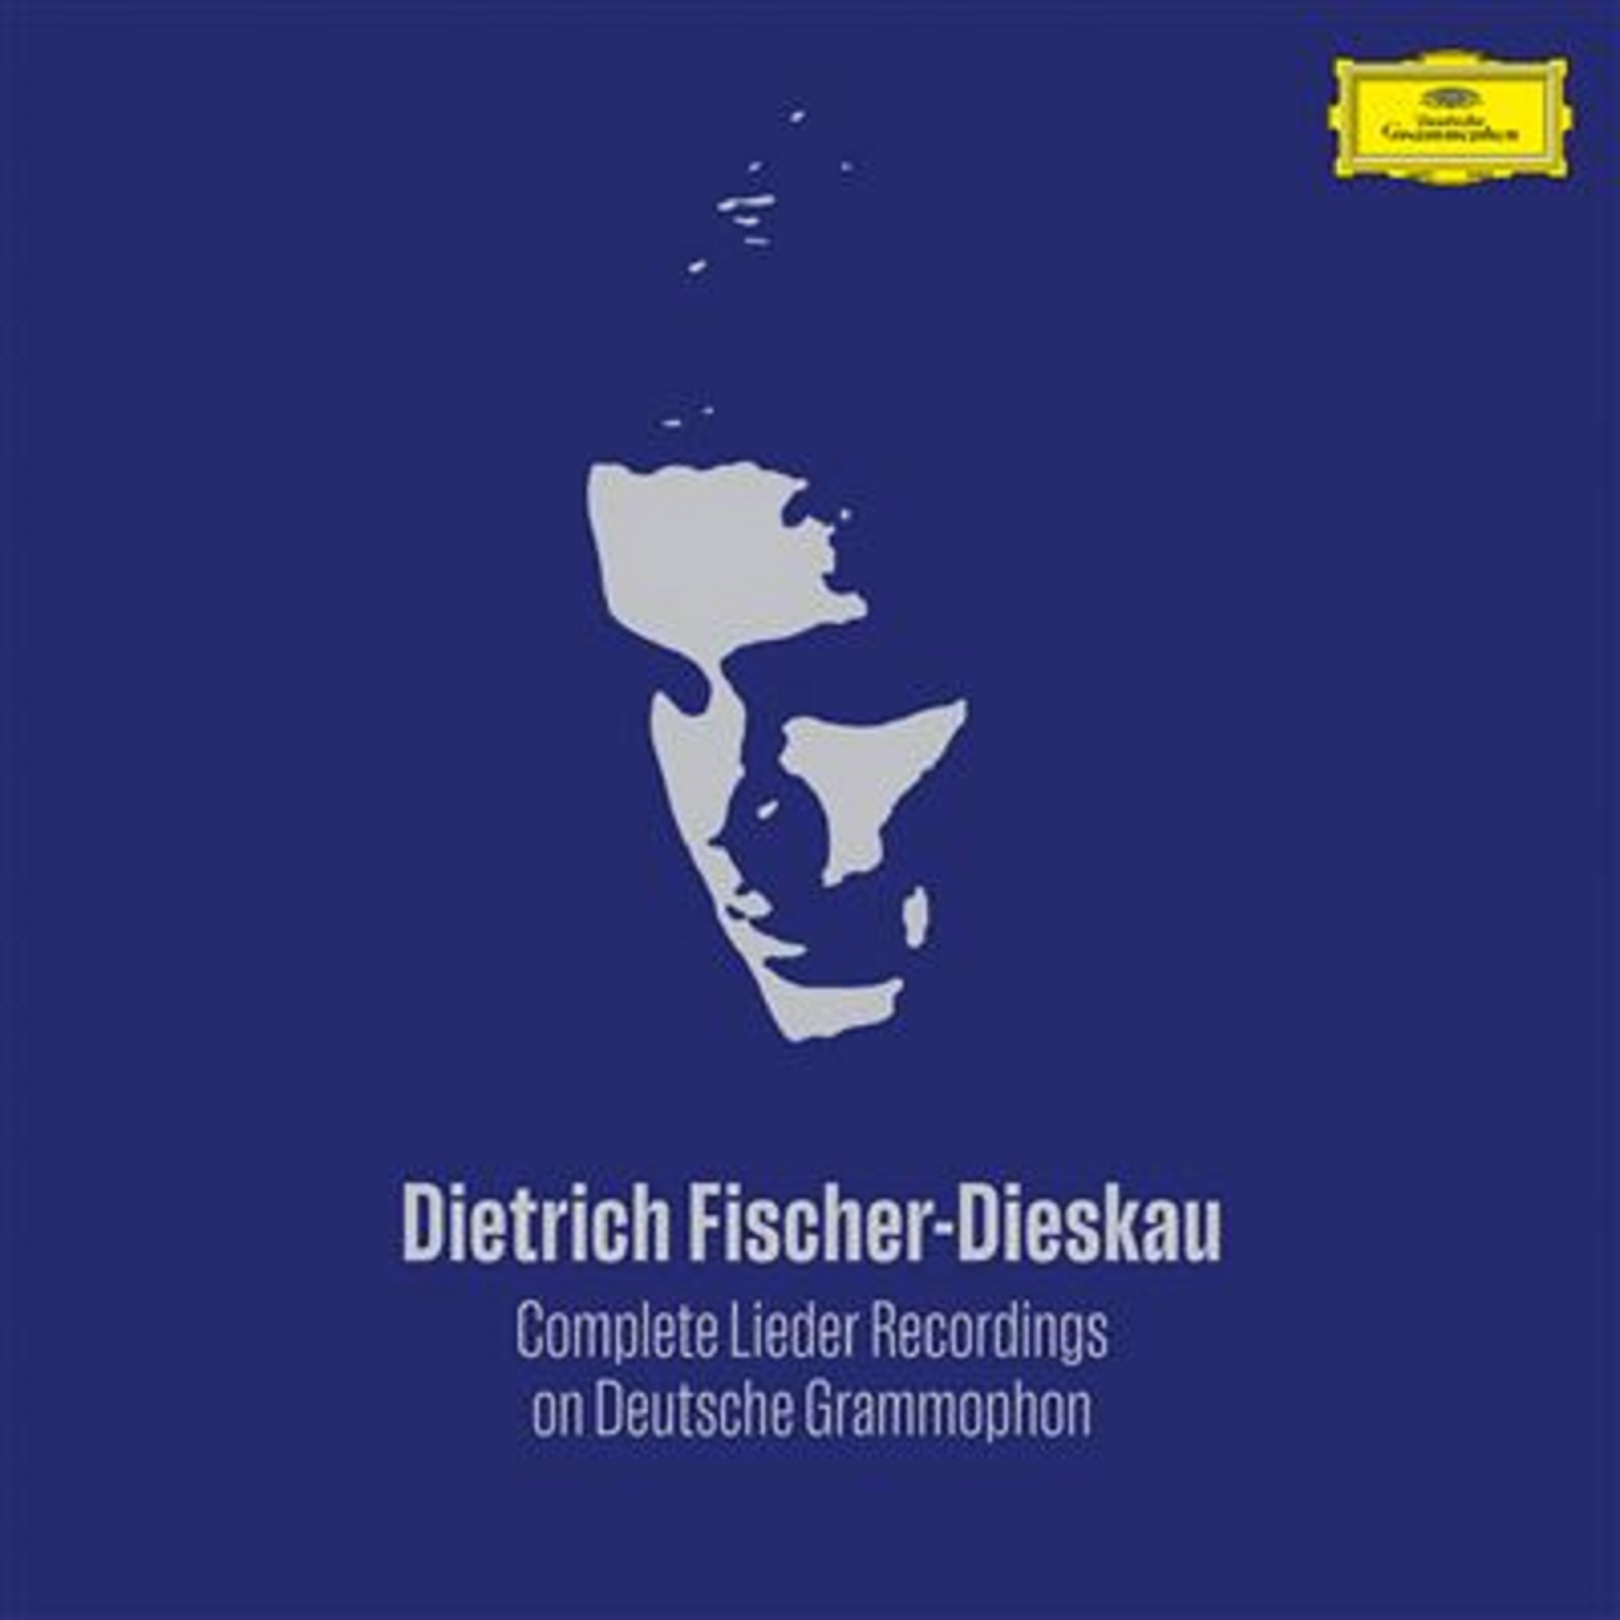 Complete Lieder Recordings On Deutsche Grammophon | Dietrich Fischer-Dieskau